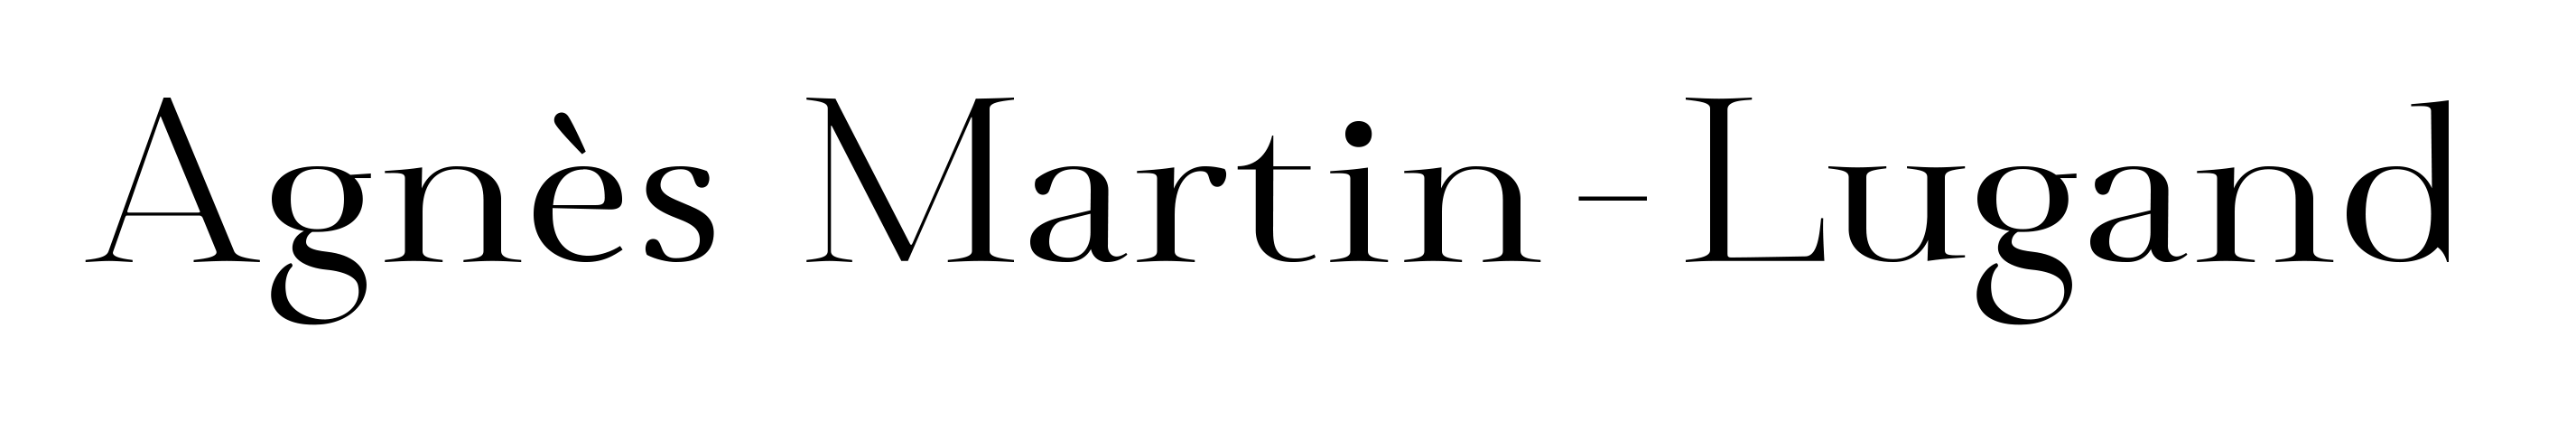 ANGELIQUE DAMOUR - projet AGNES MARTIN LUGAND - logo